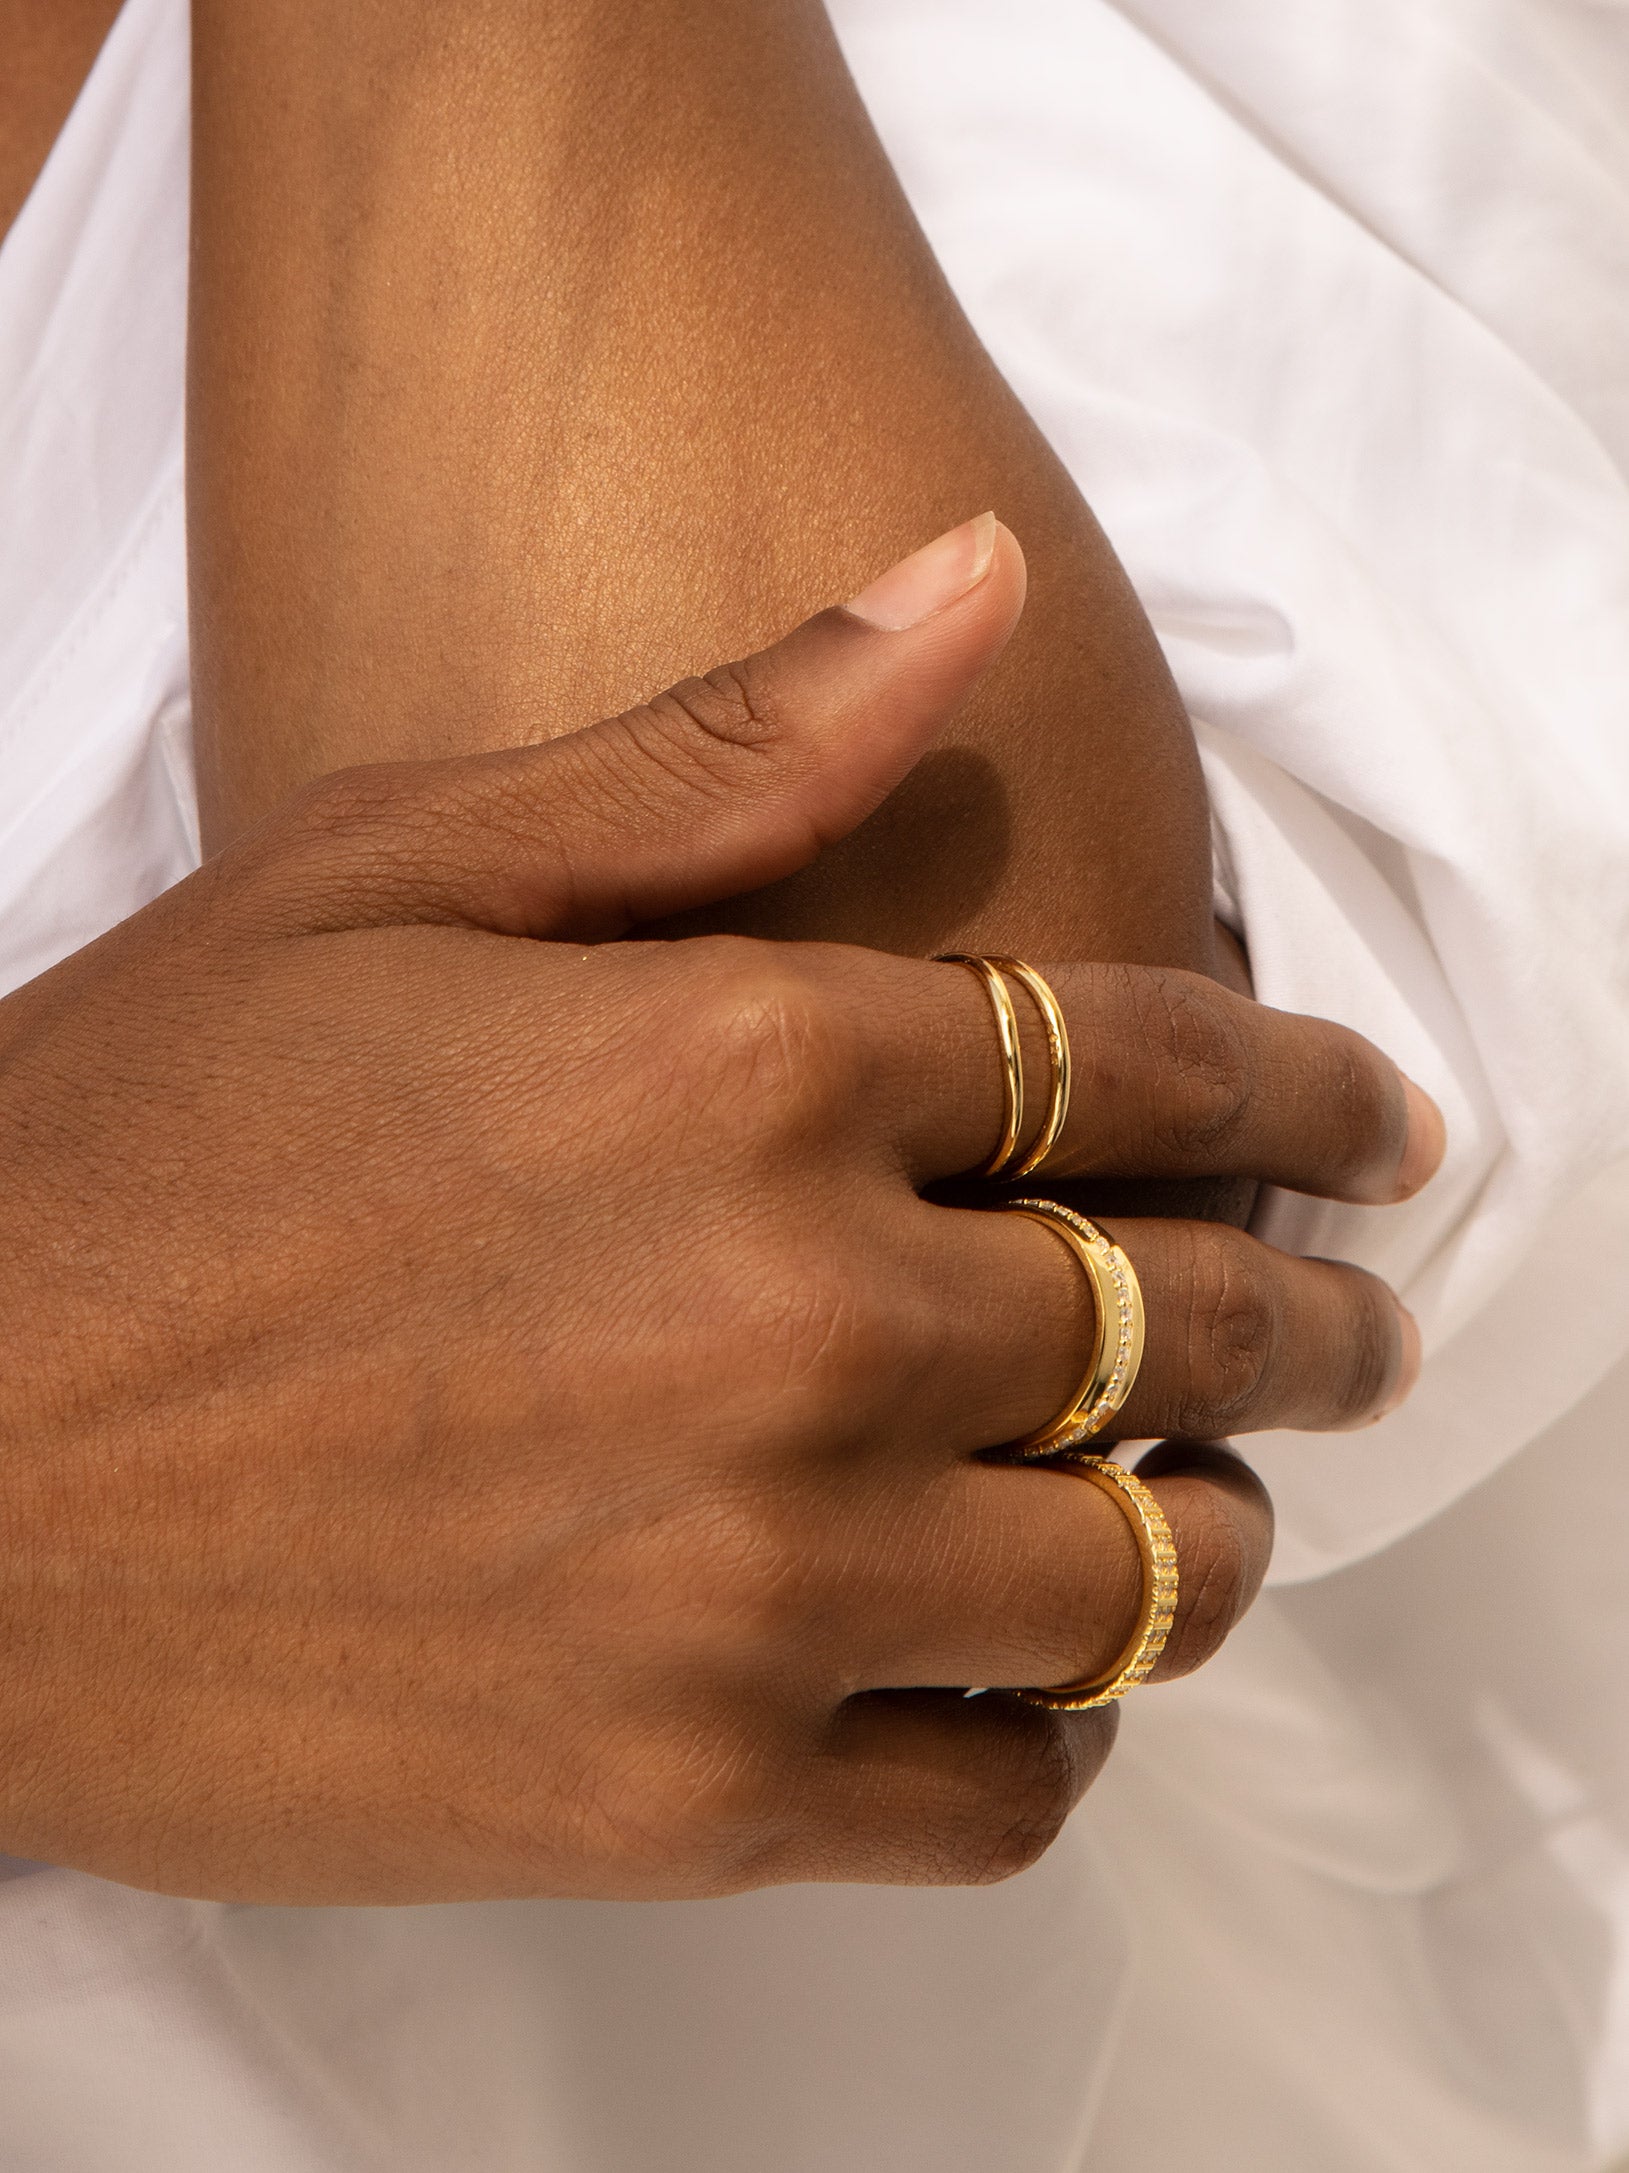 gold rings for women